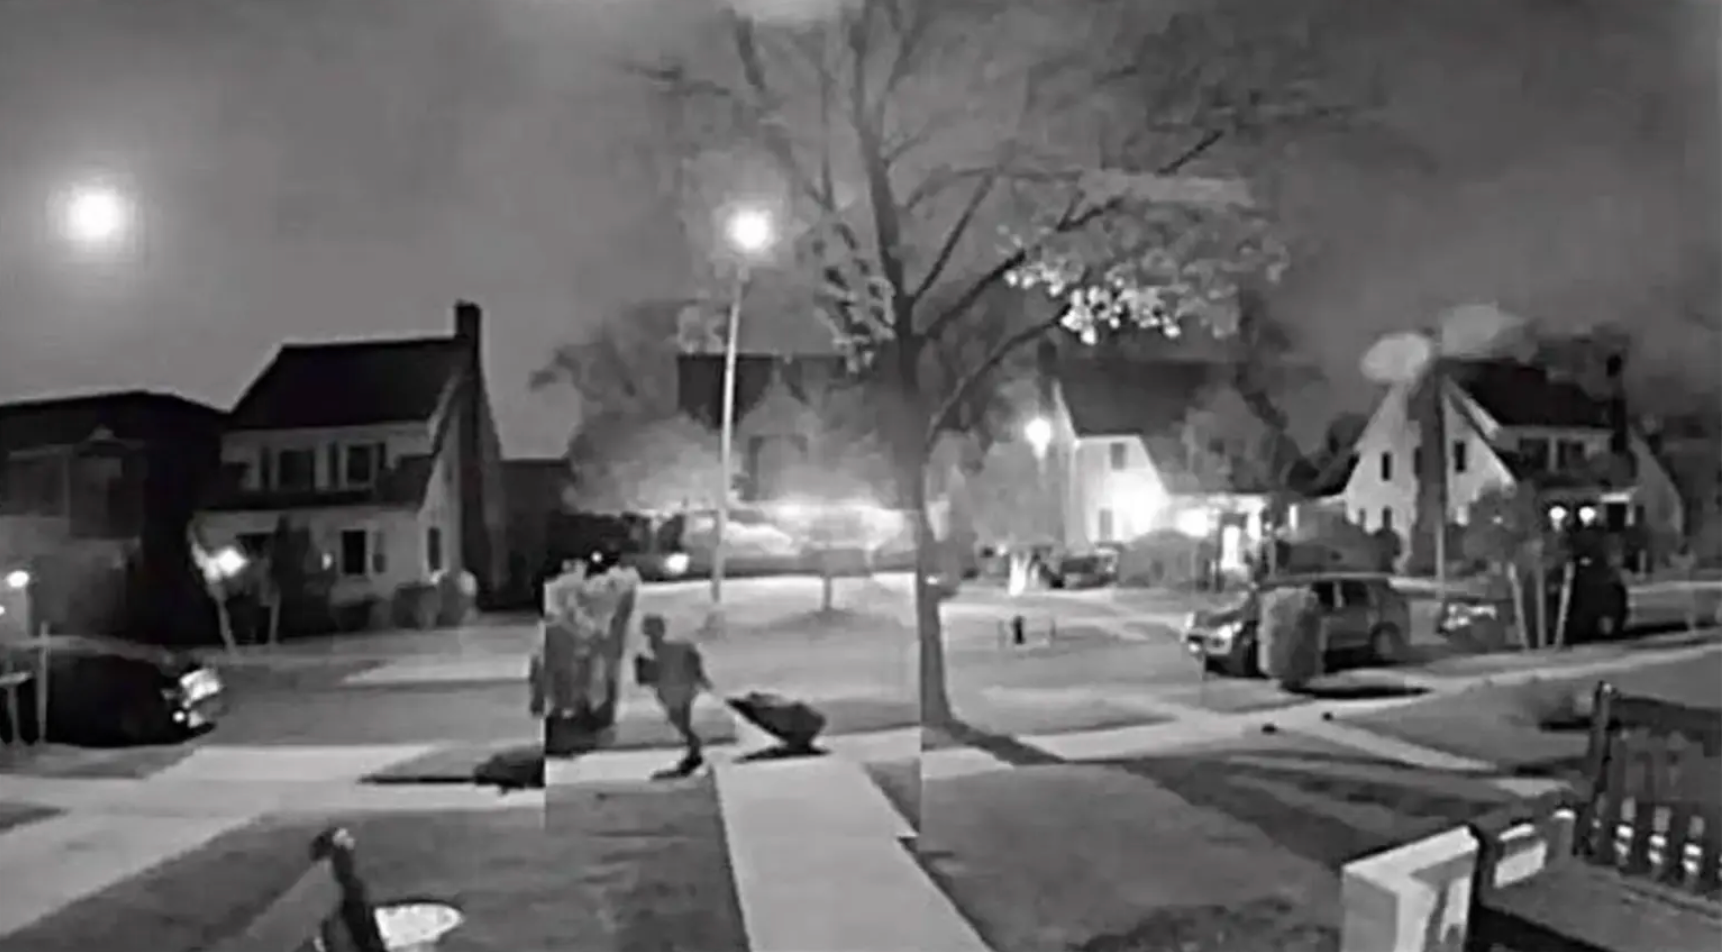 Vídeos de vigilancia muestran a una persona arrastrando una bolsa de lona con el cuerpo de Gaal dentro